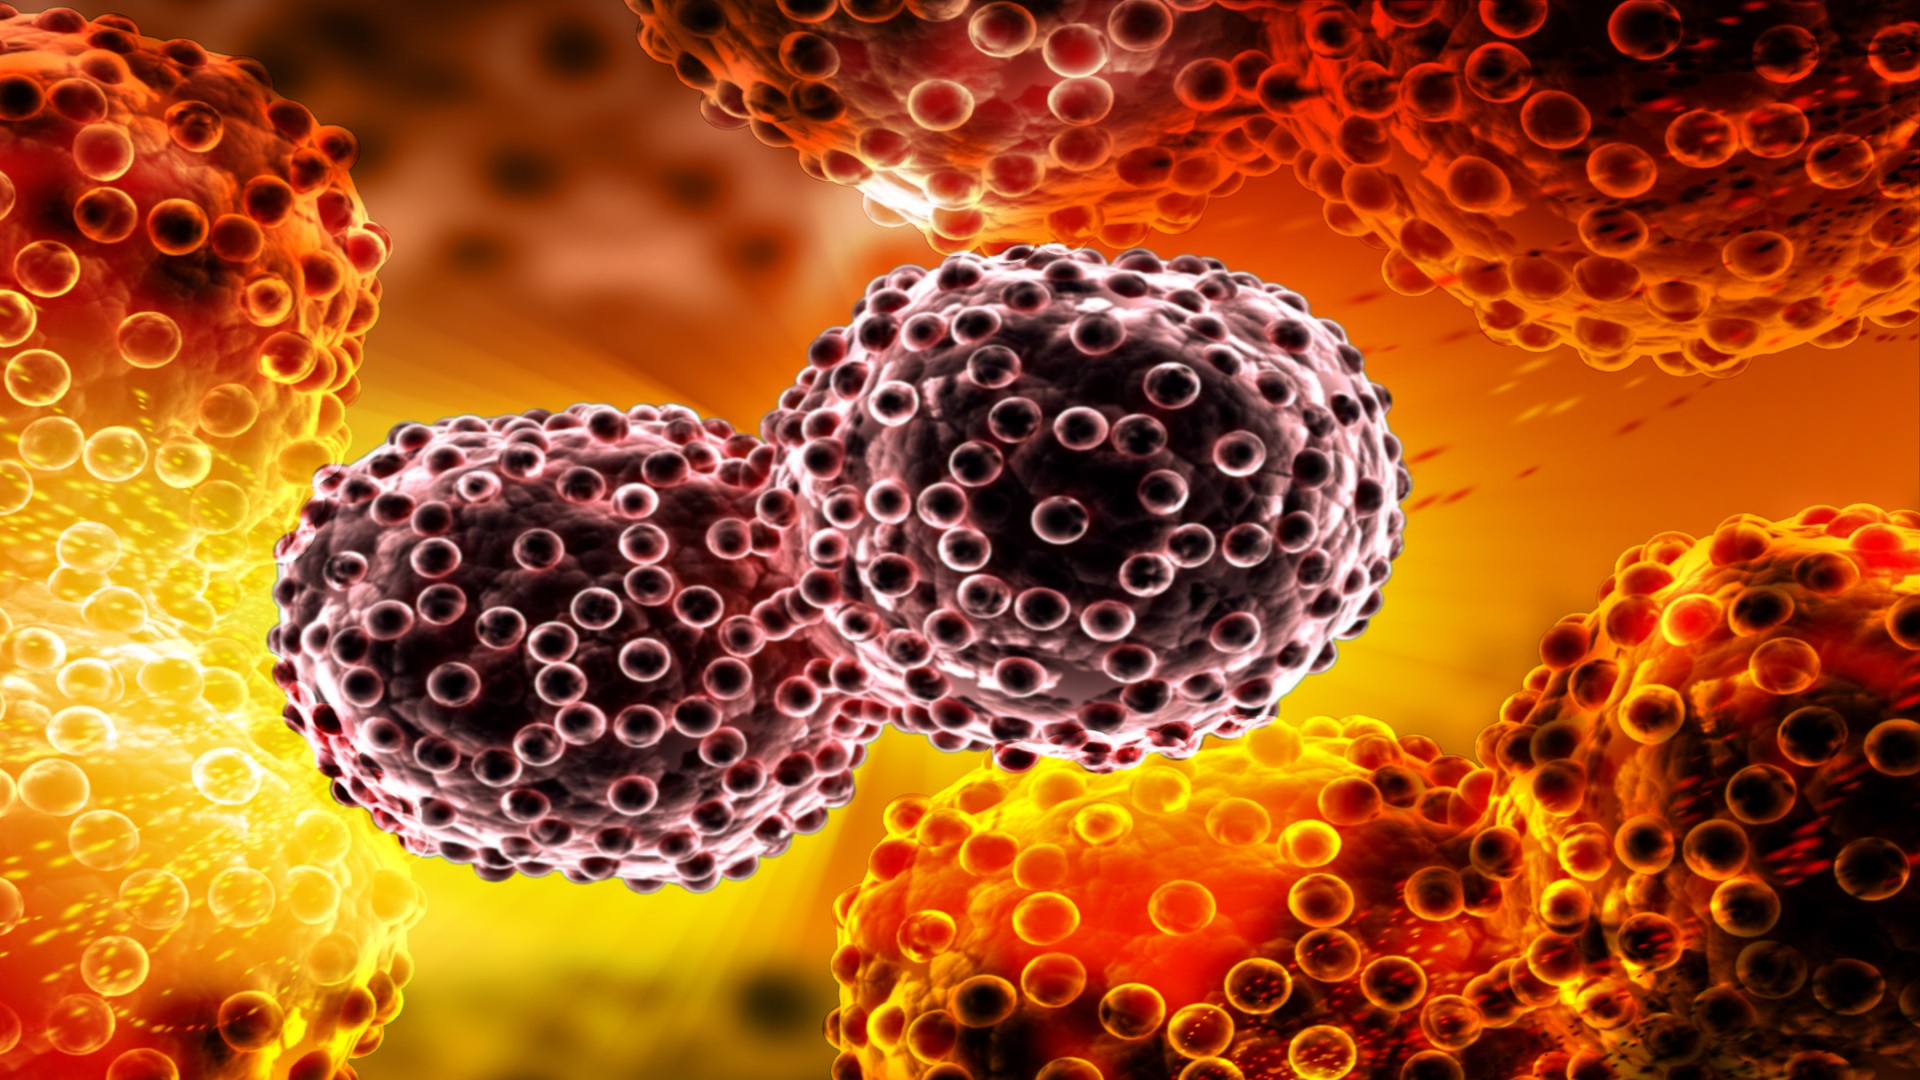 Καρκίνος θεραπεία νέα: Νέος τρόπος στόχευσης καρκινικών κυττάρων